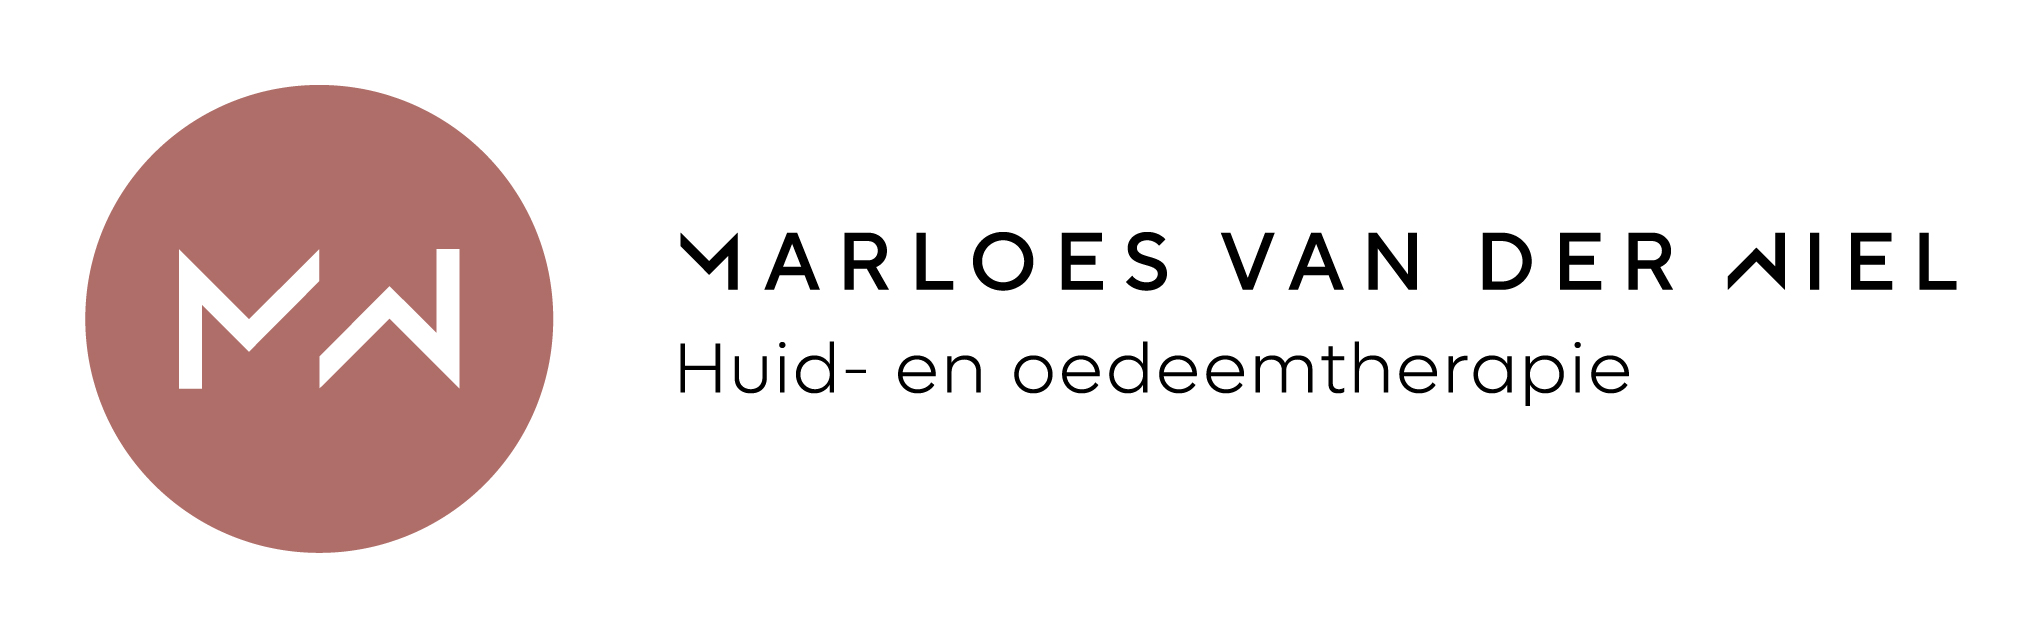 Marloes van der Wiel - Huidtherapie Huizen logo